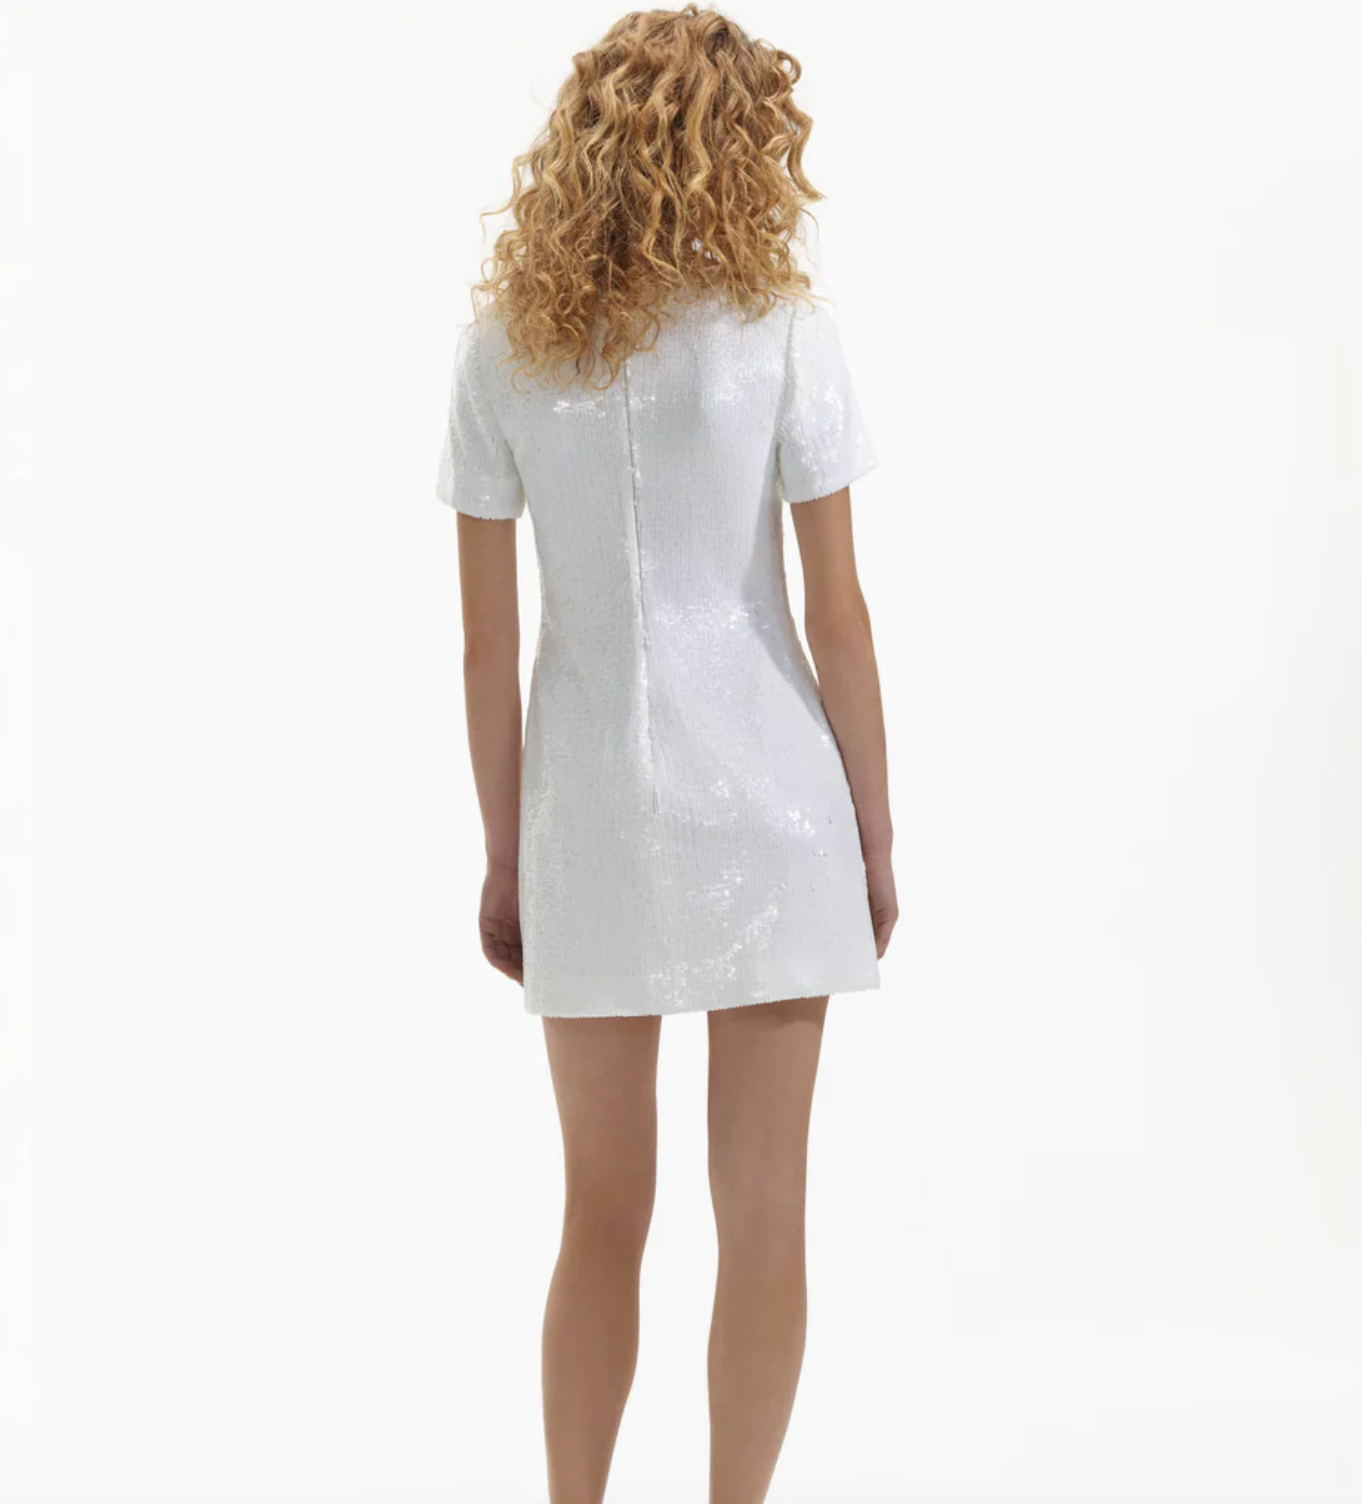 SEQUIN MINI DRESS - White